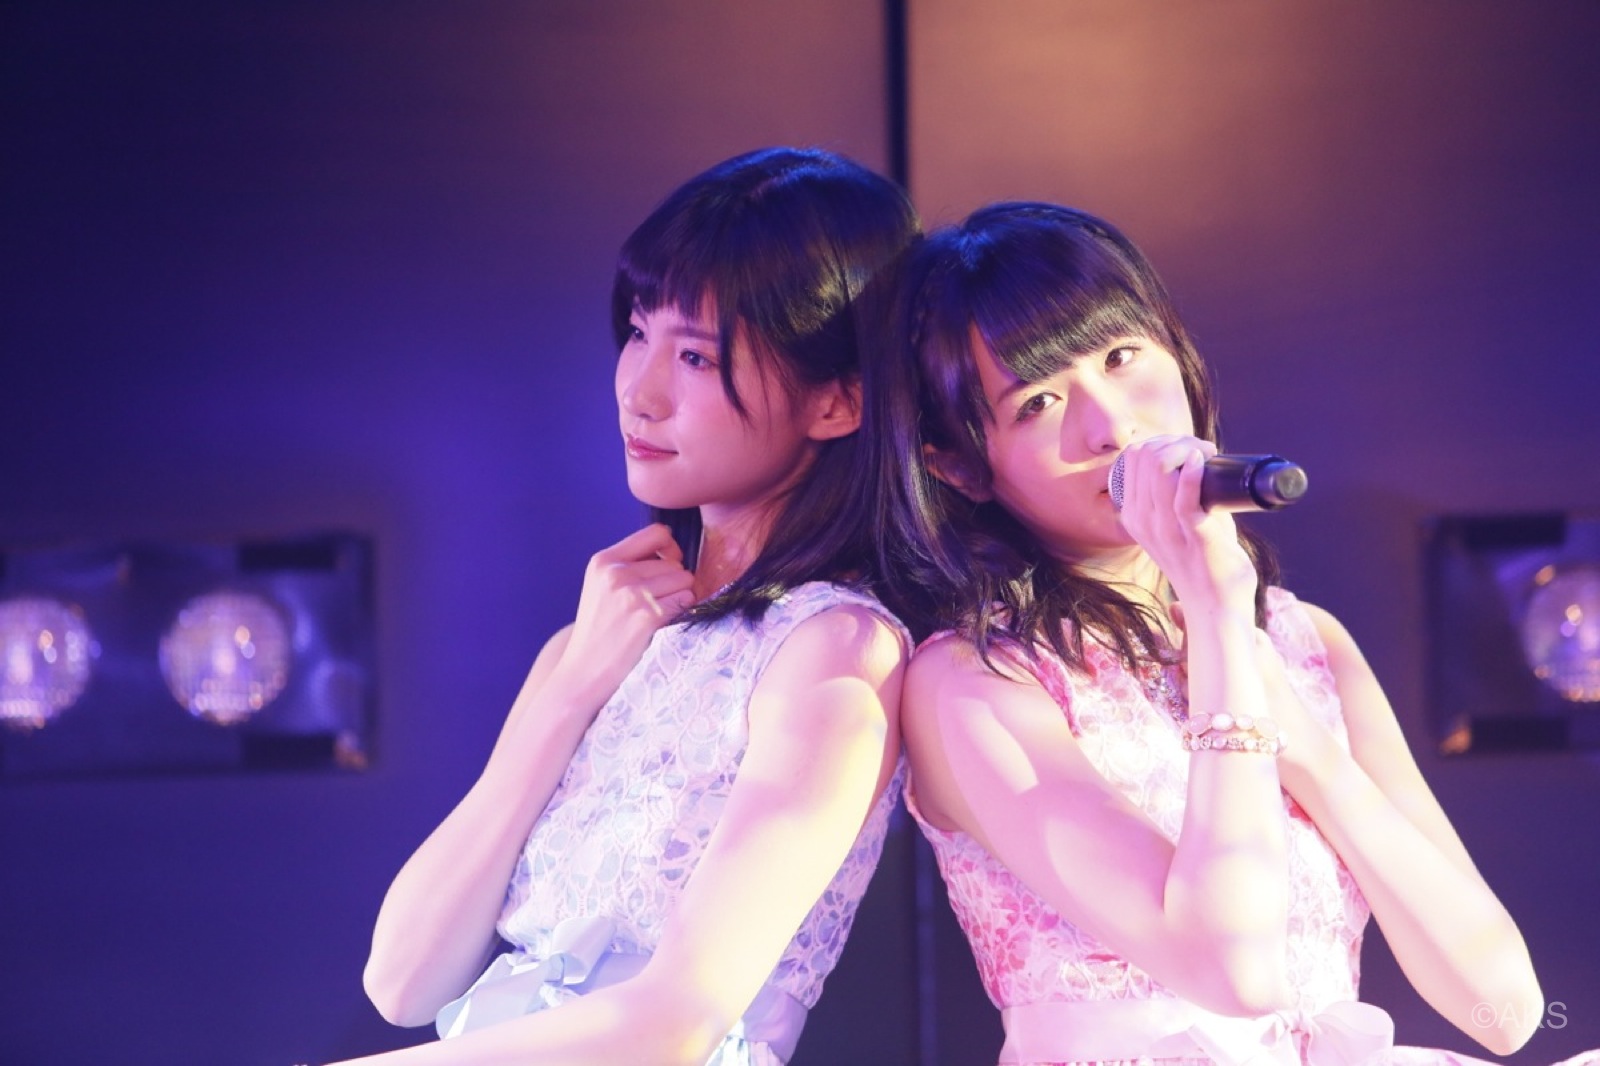 AKB48 Celebrity Fan Set List #3 – “Dou-Naru? Dou-Suru?” by Journalist Souichiro Tahara to Make Debut!